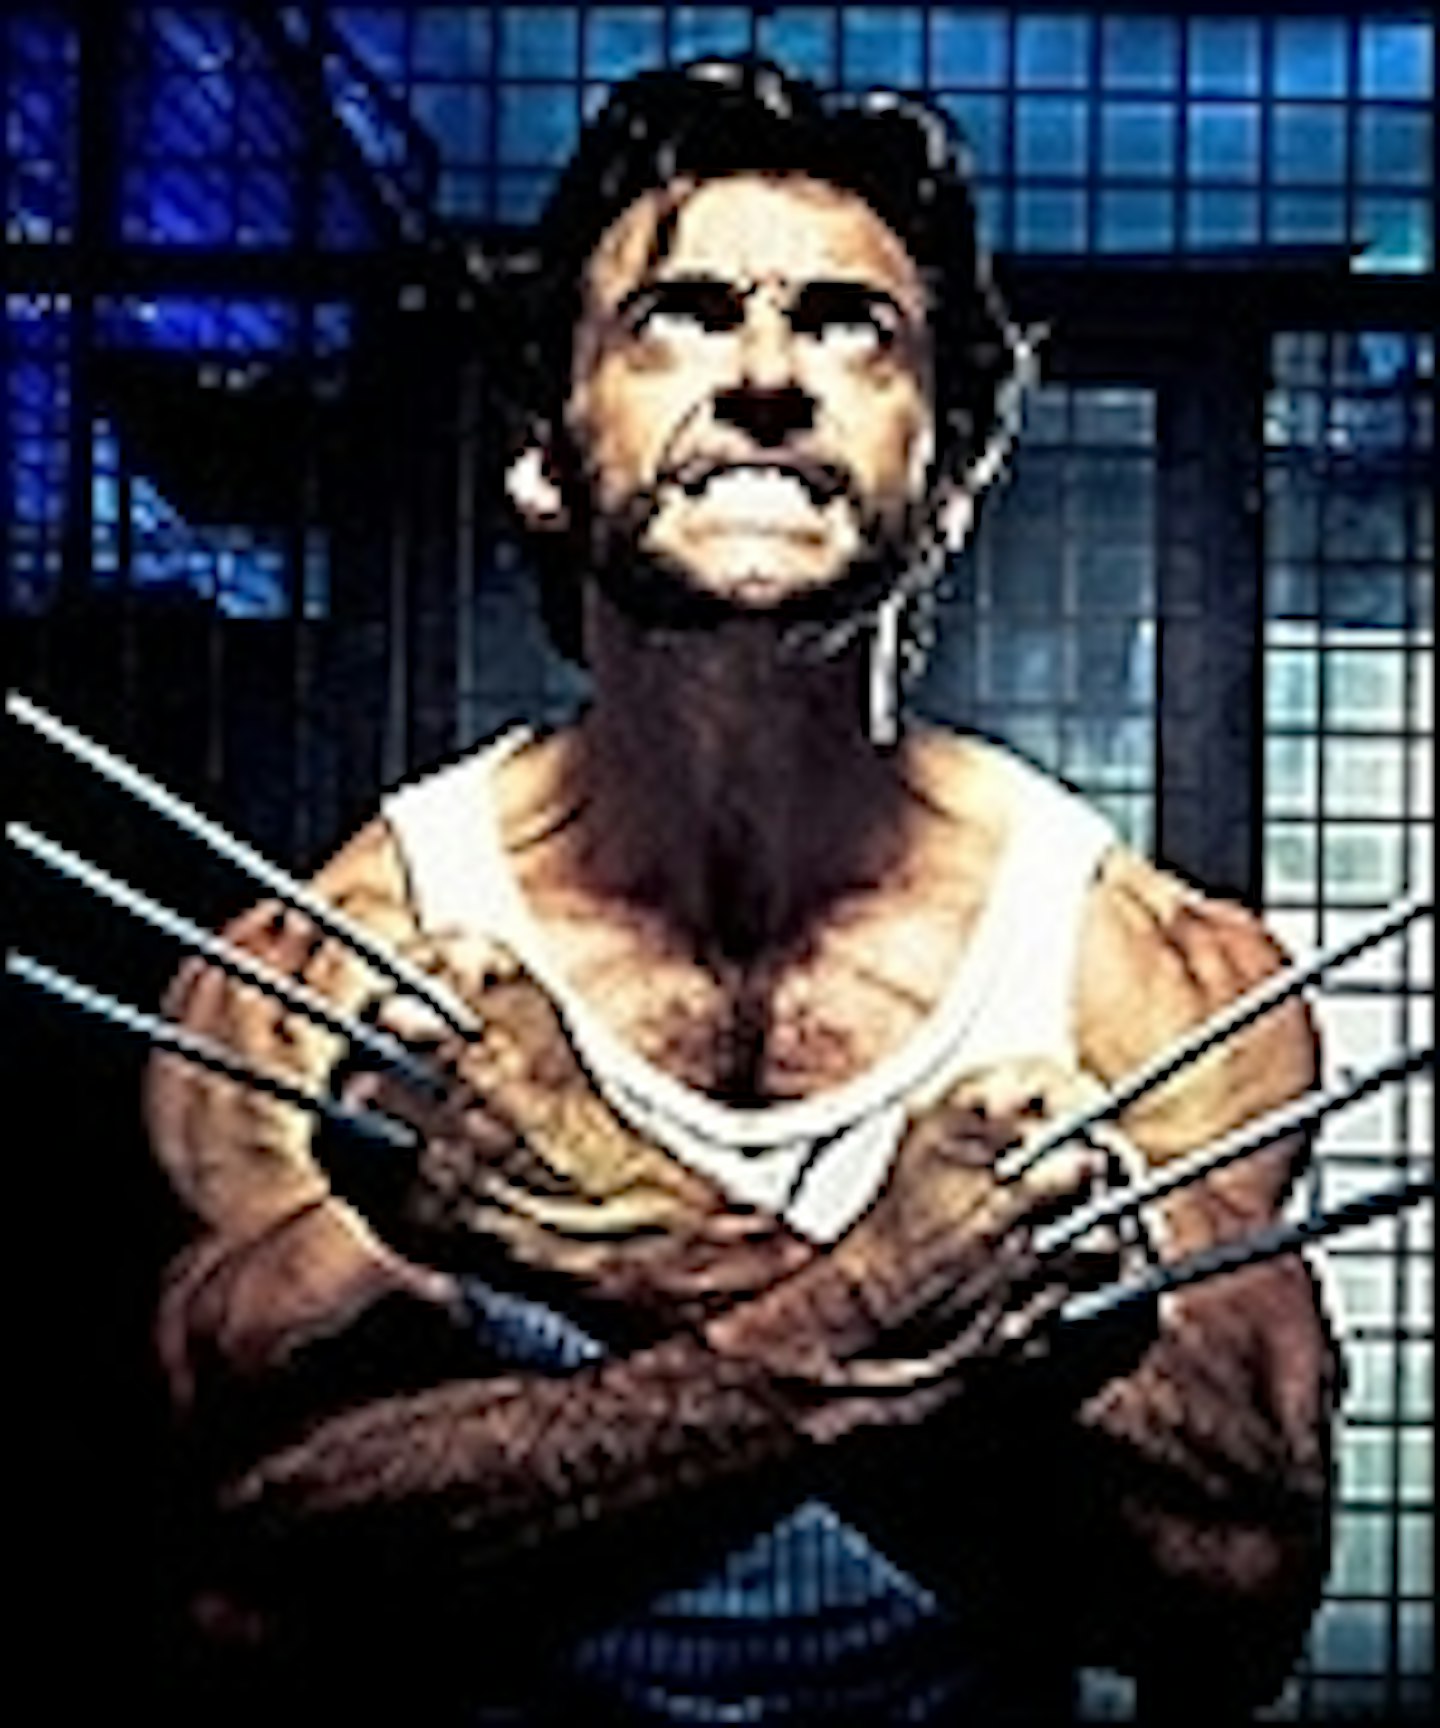 Watch Wolverine Here!